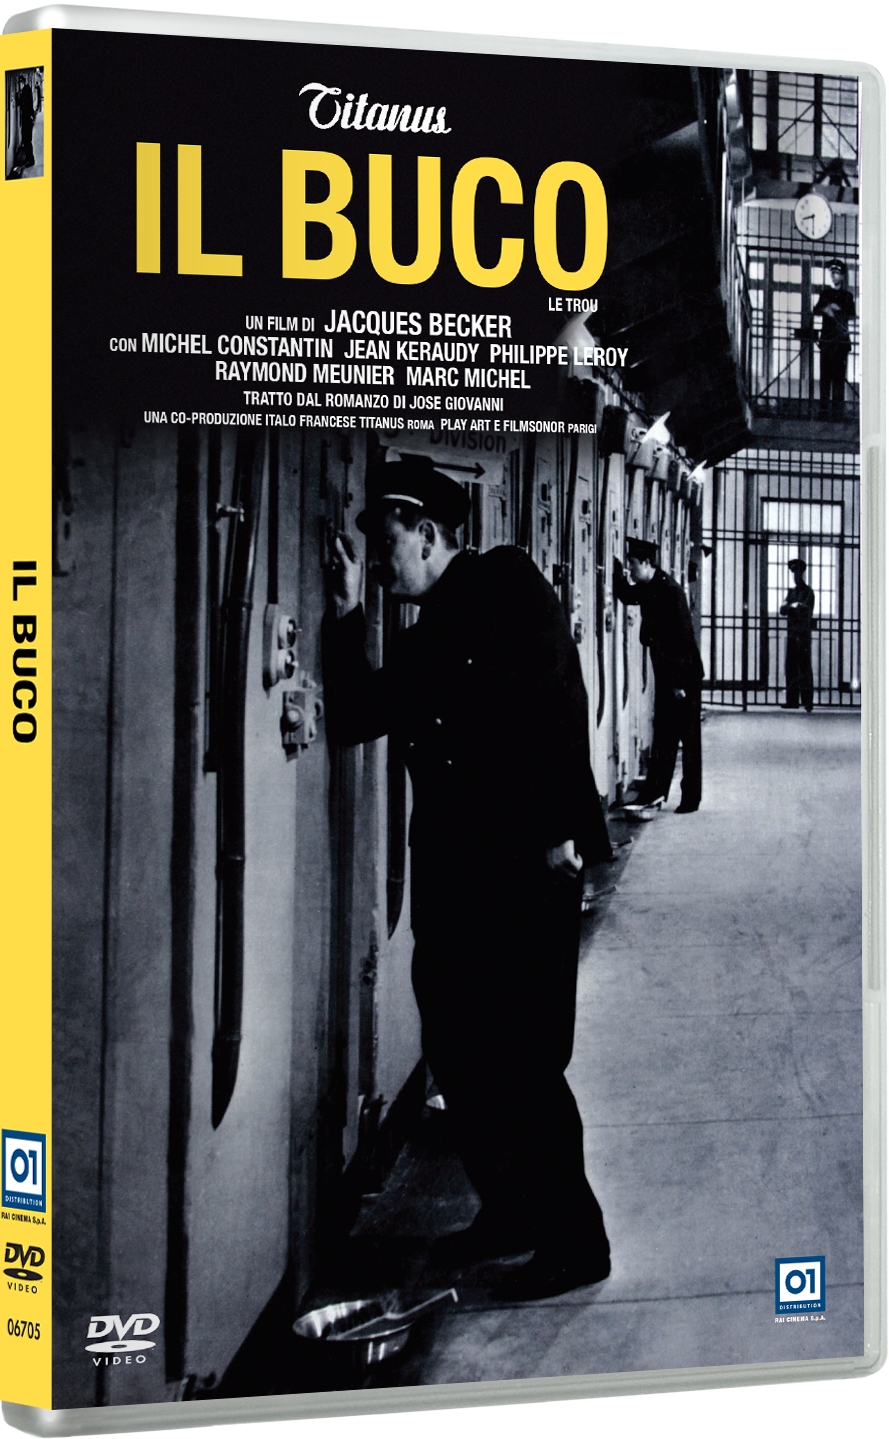 Le Trou Blu-ray - Michel Constantin